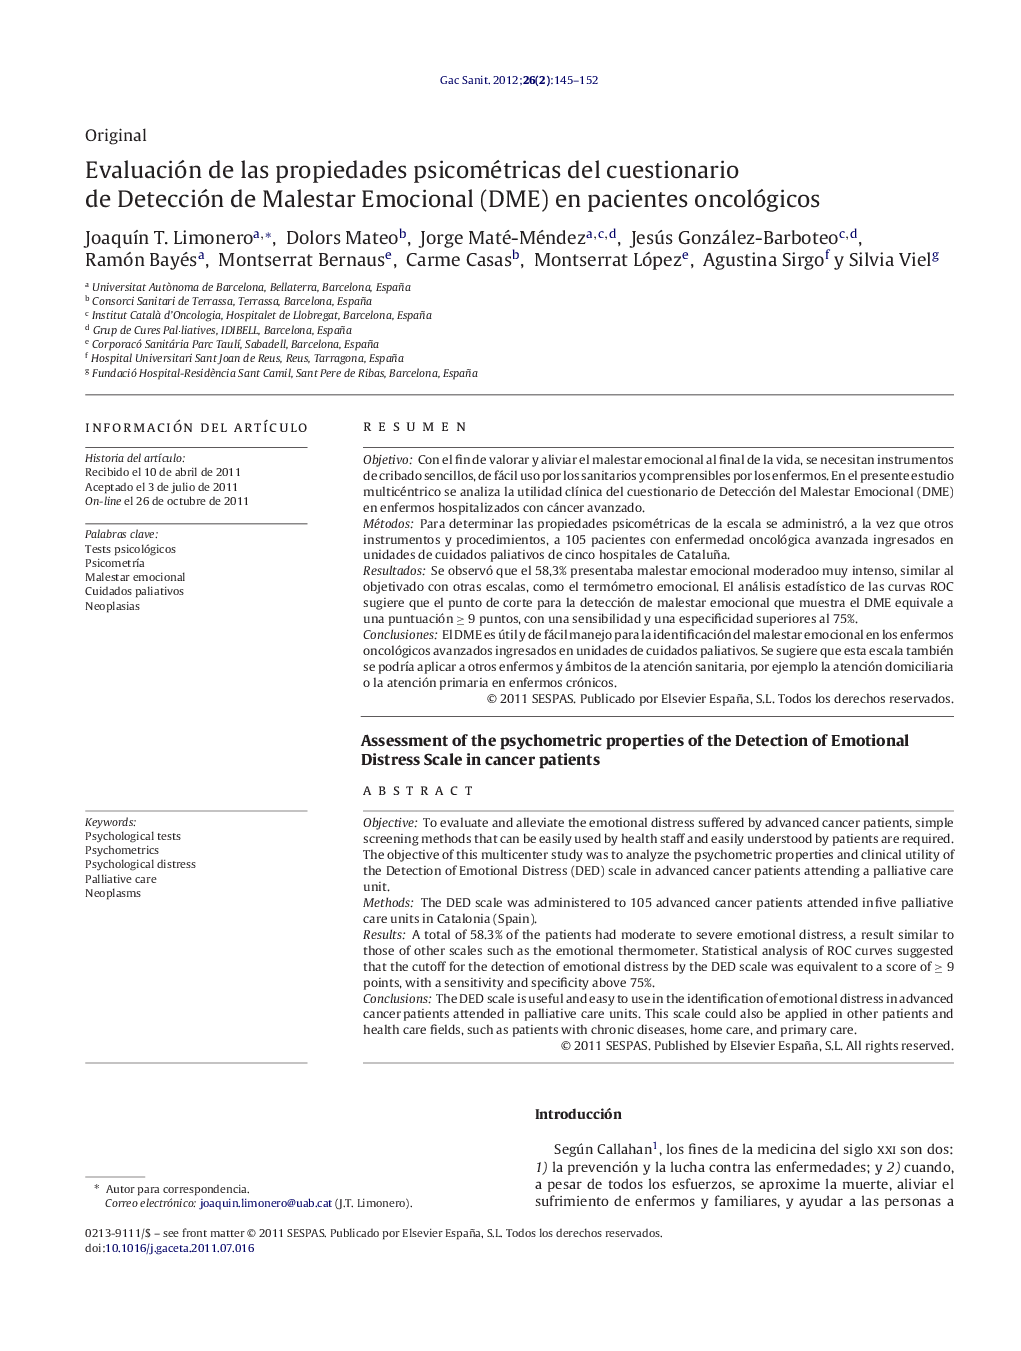 Evaluación de las propiedades psicométricas del cuestionario de Detección de Malestar Emocional (DME) en pacientes oncológicos